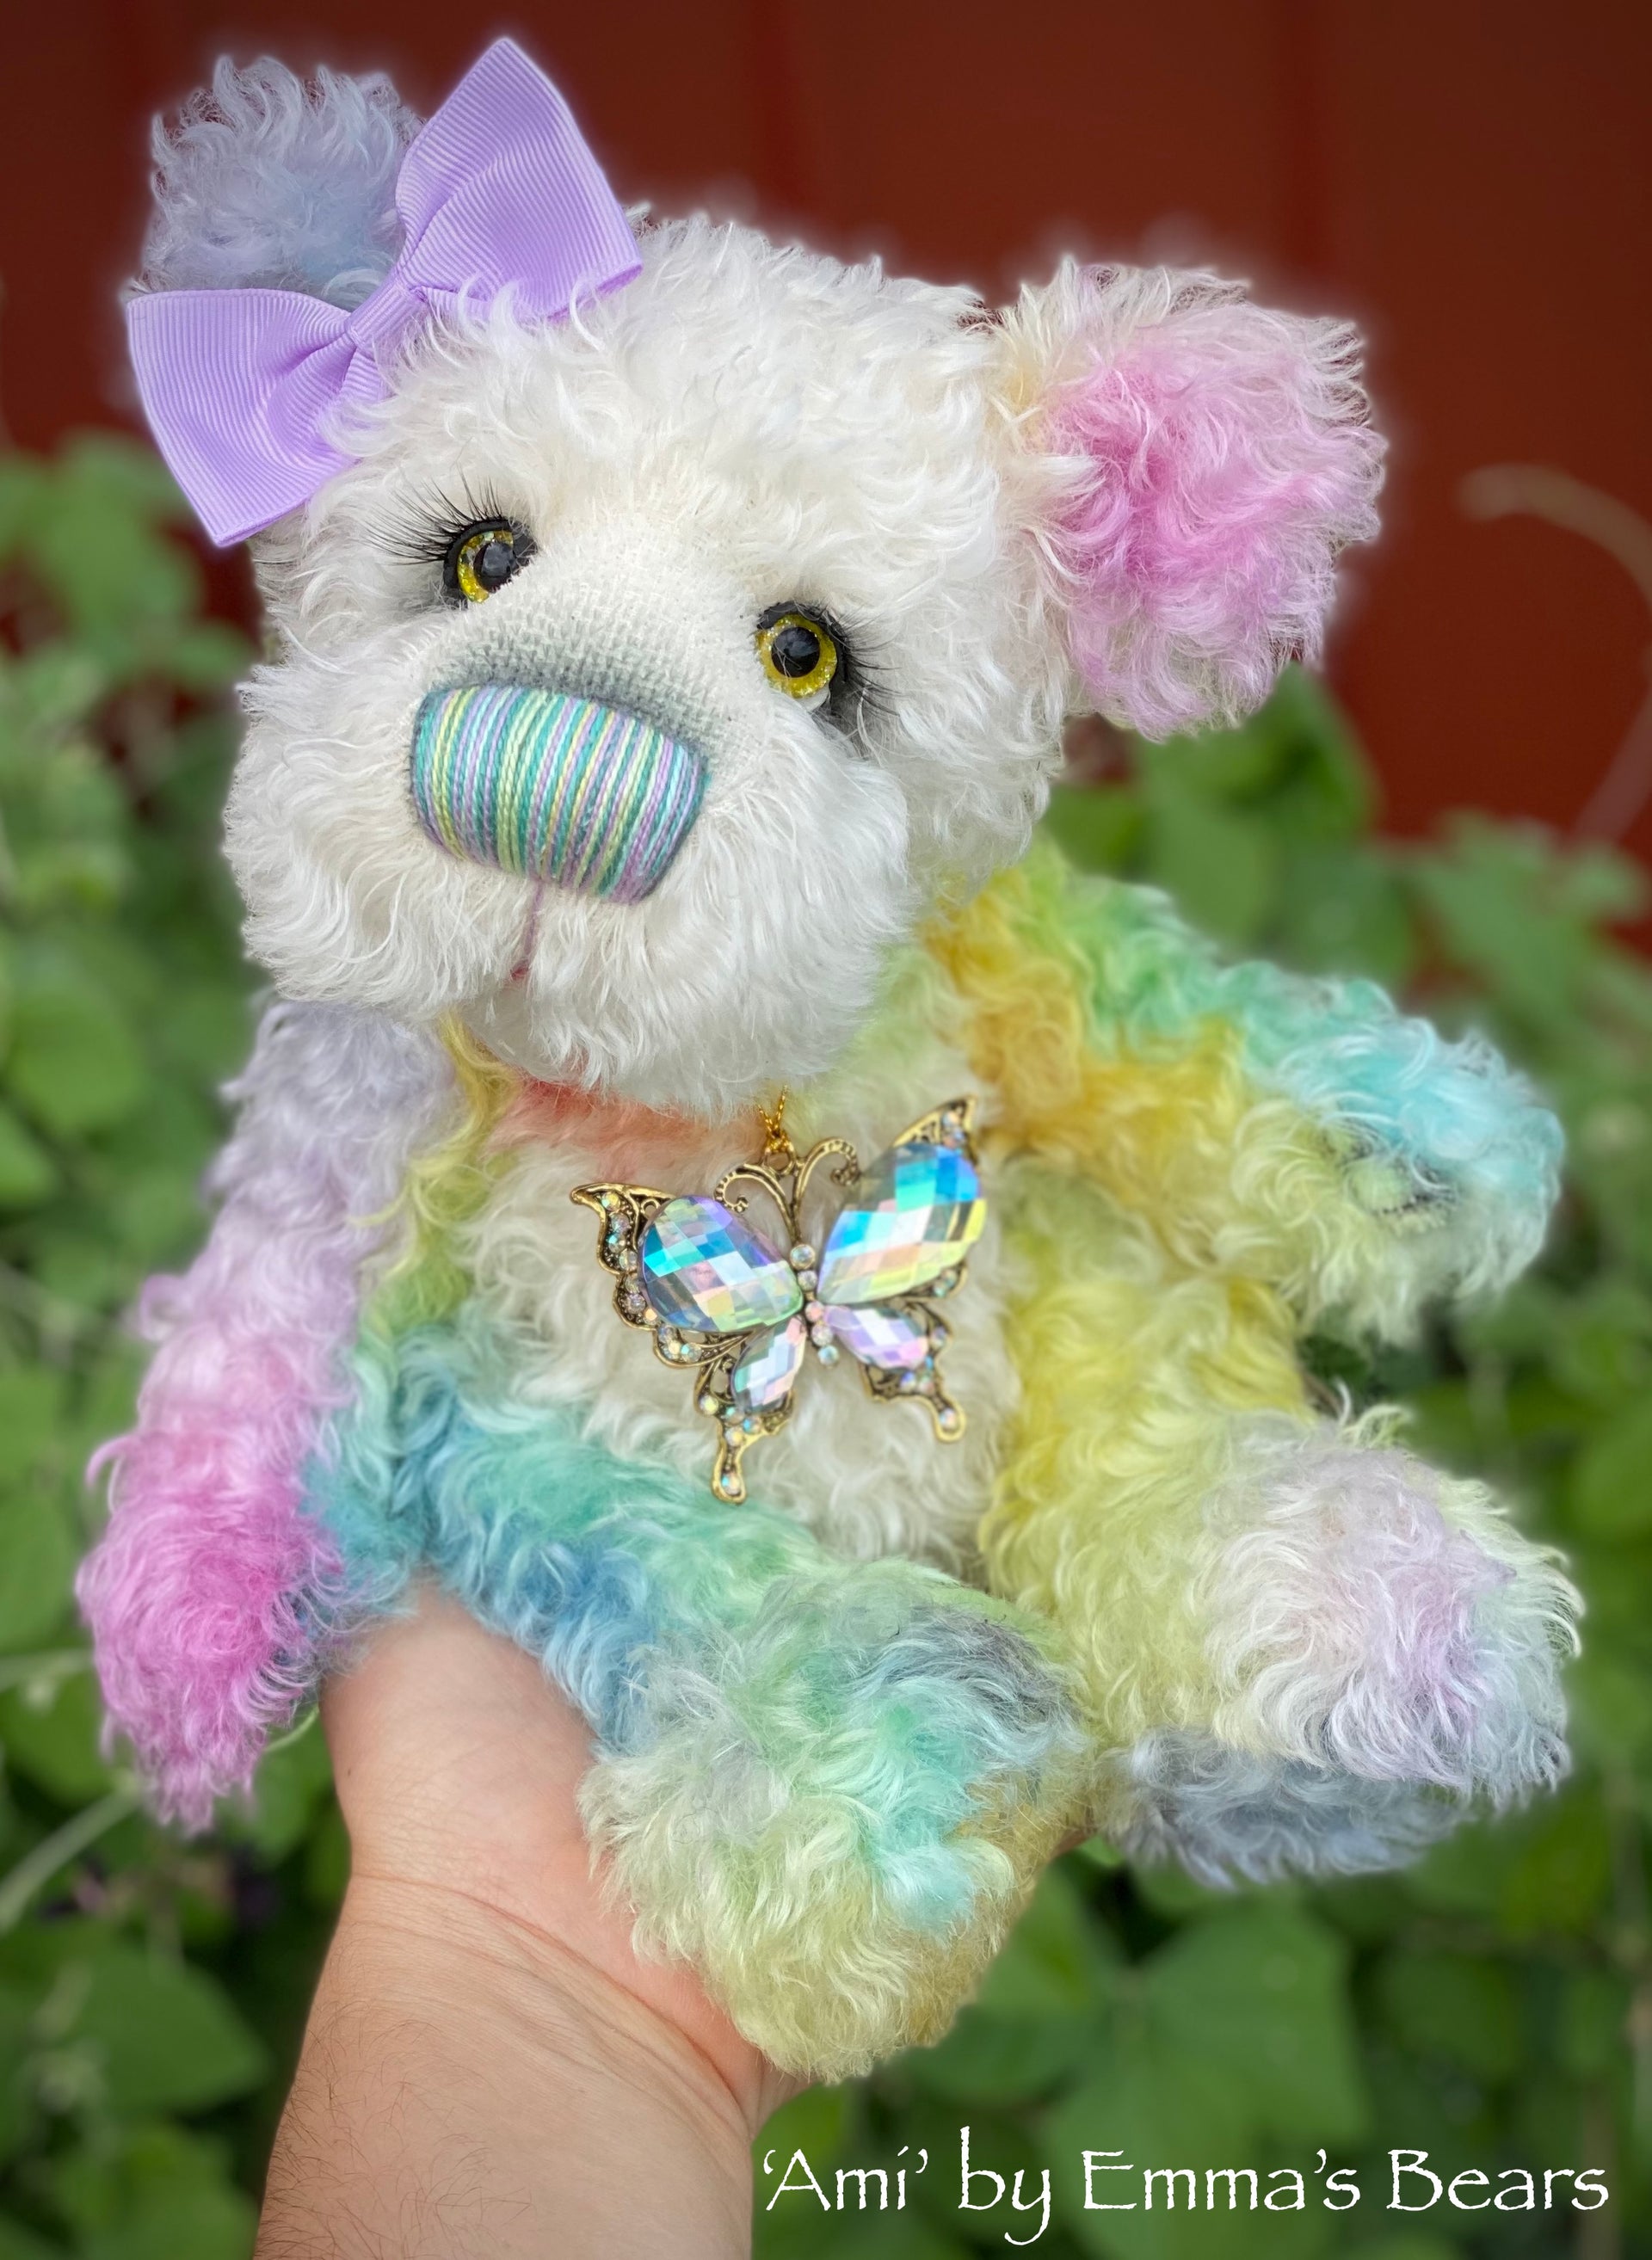 Ami - 12" Hand Dyed Mohair Artist Bear by Emma's Bears - OOAK